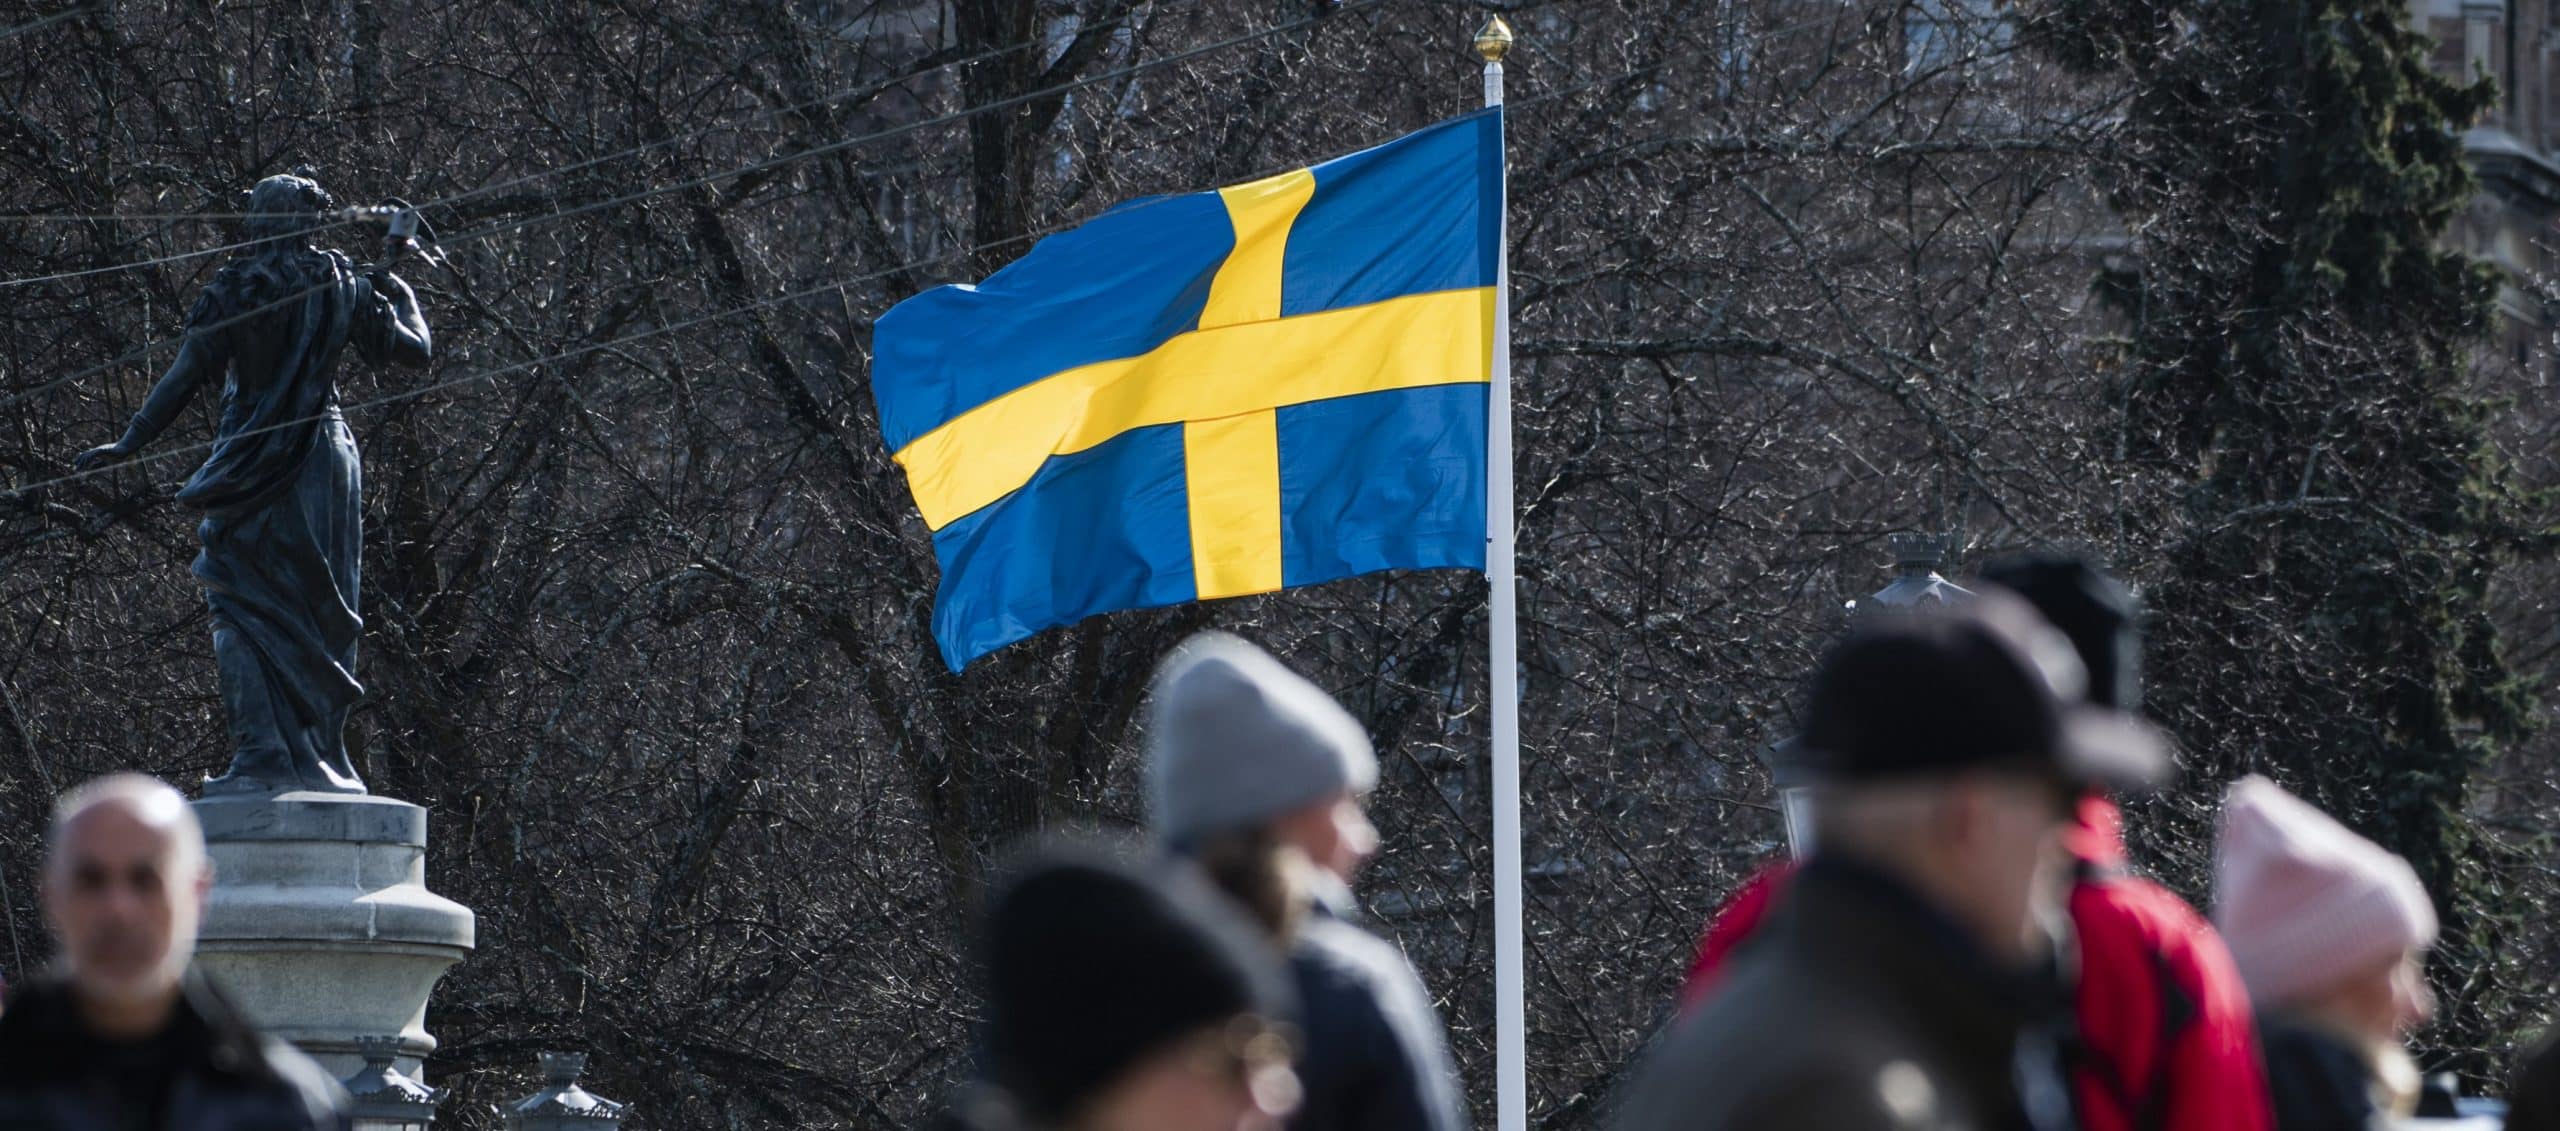 Tom Woods Debunks the “Socialist Sweden” Myth